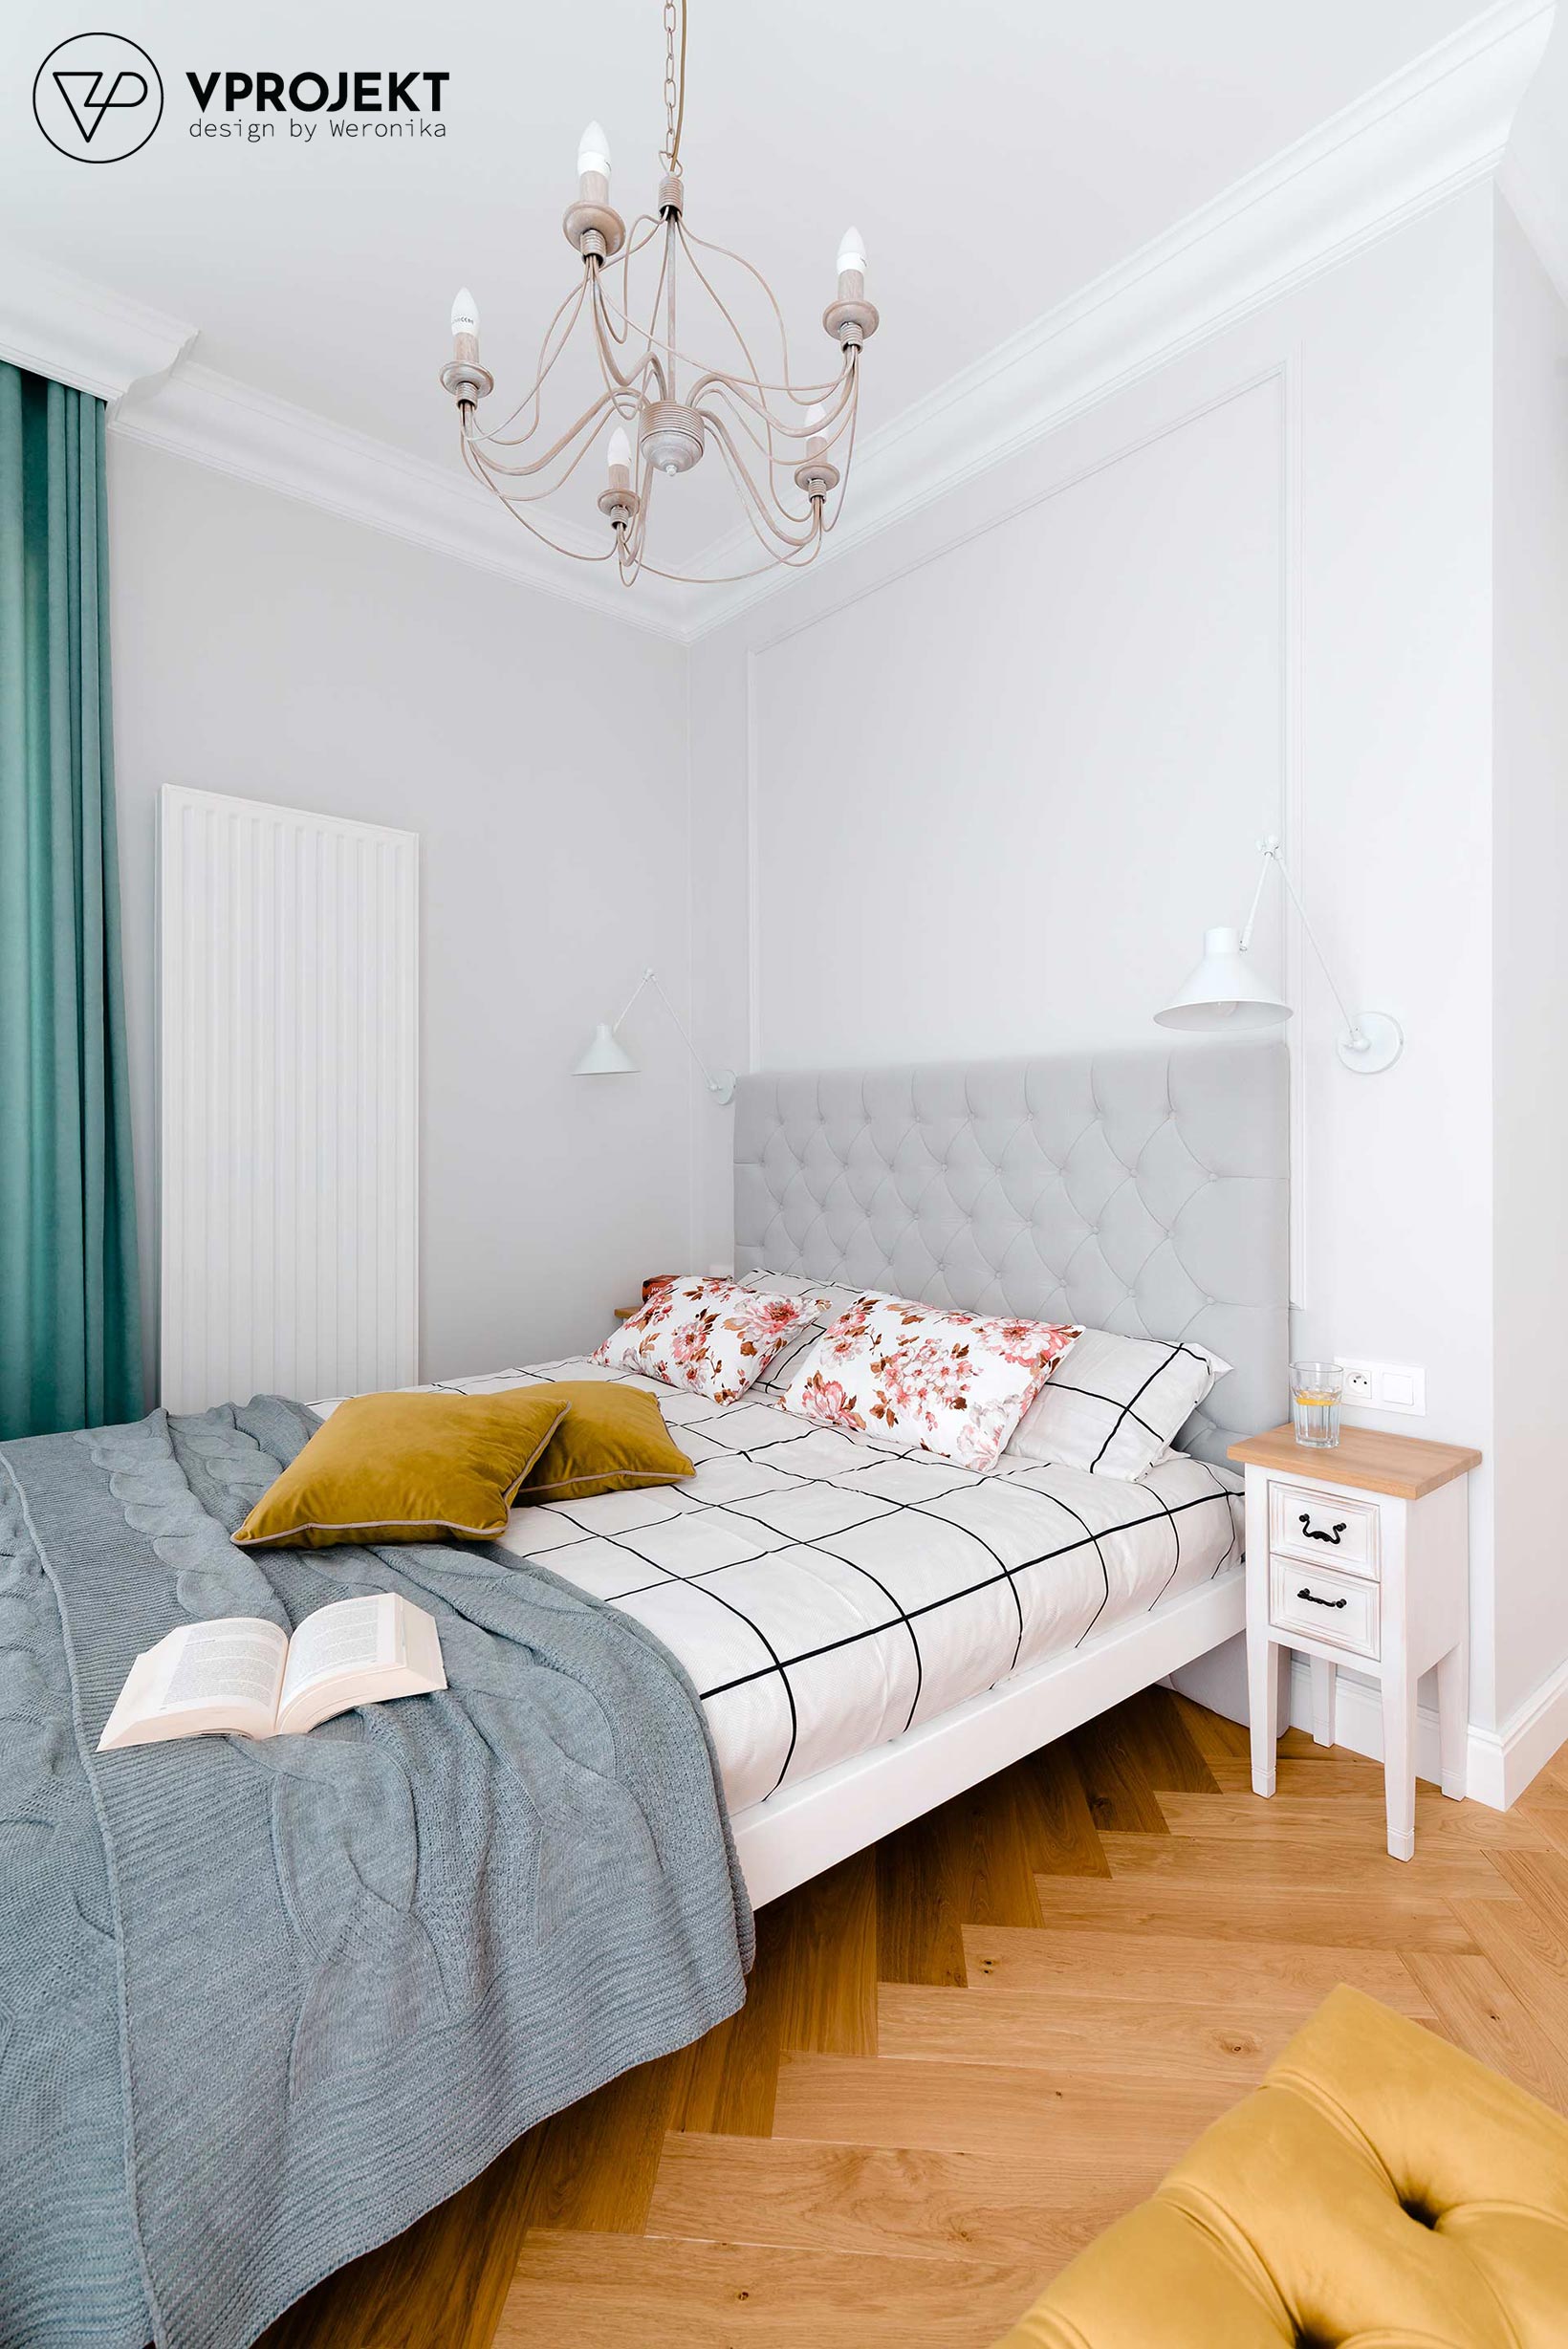 Projekt sypialni, mieszkanie w Olsztynie, Vprojekt